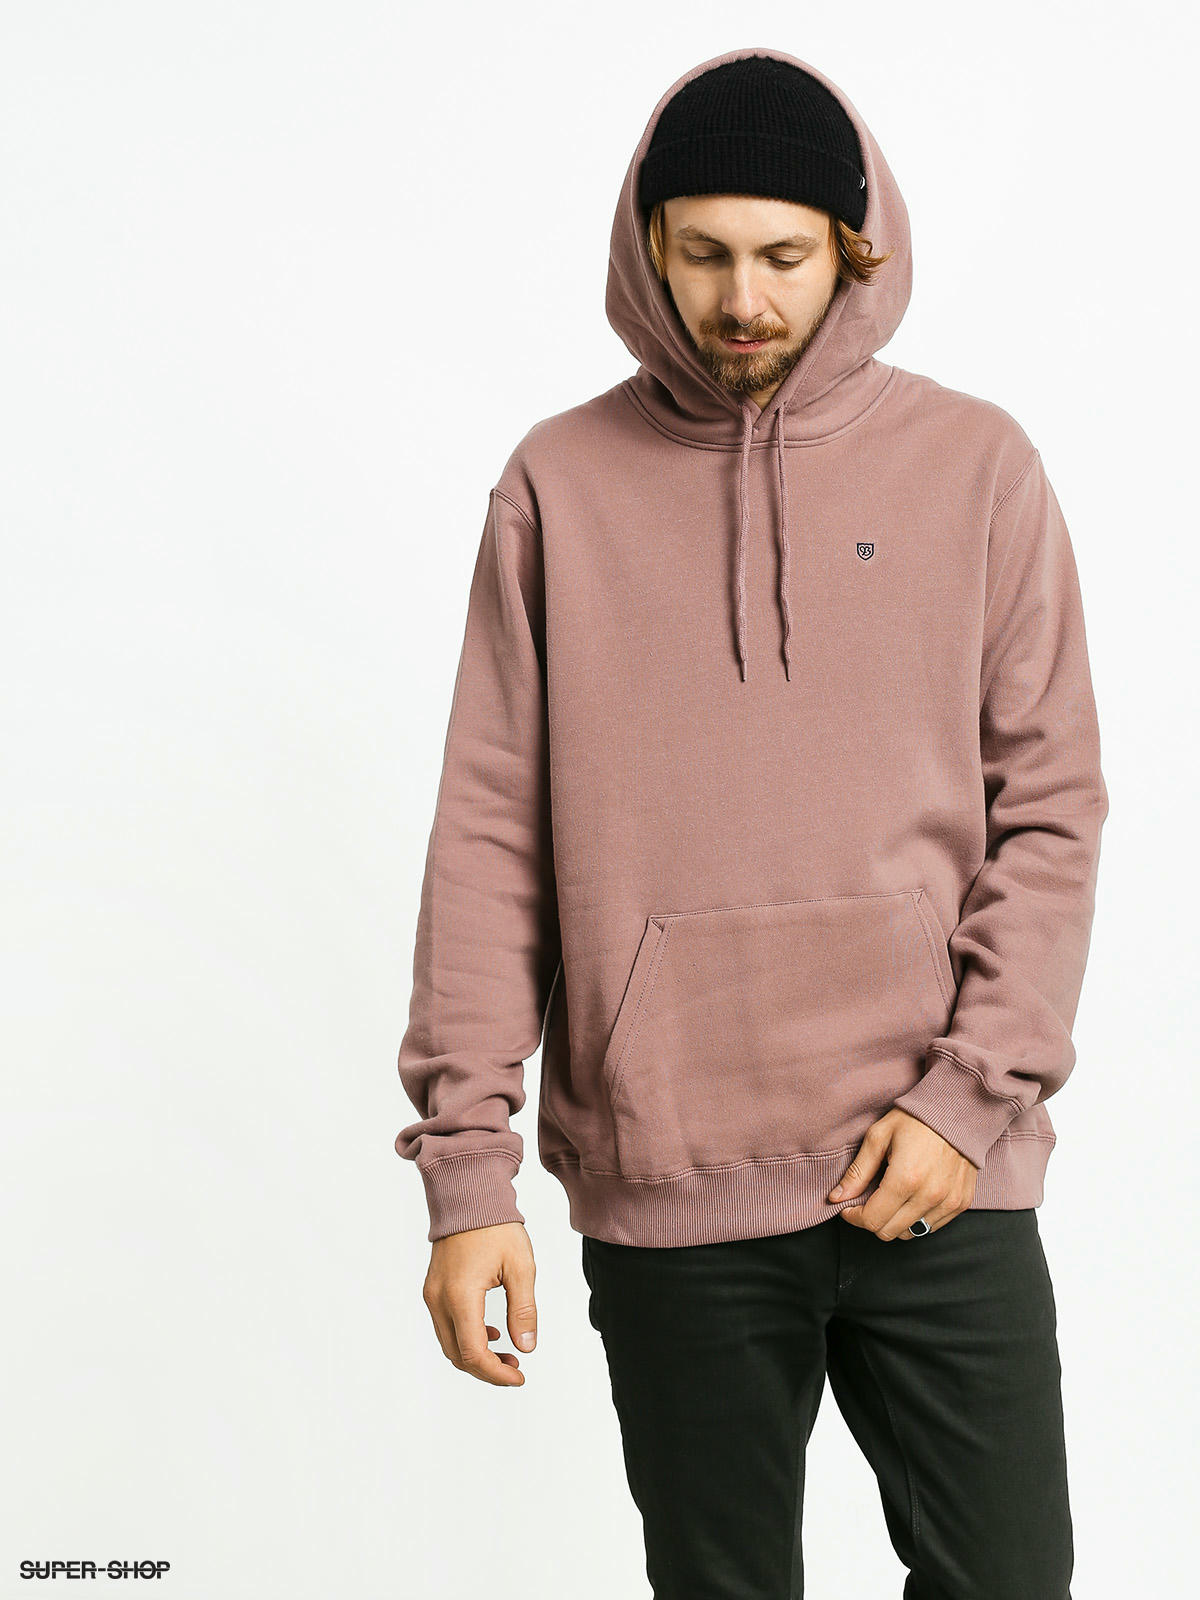 mauve color hoodie